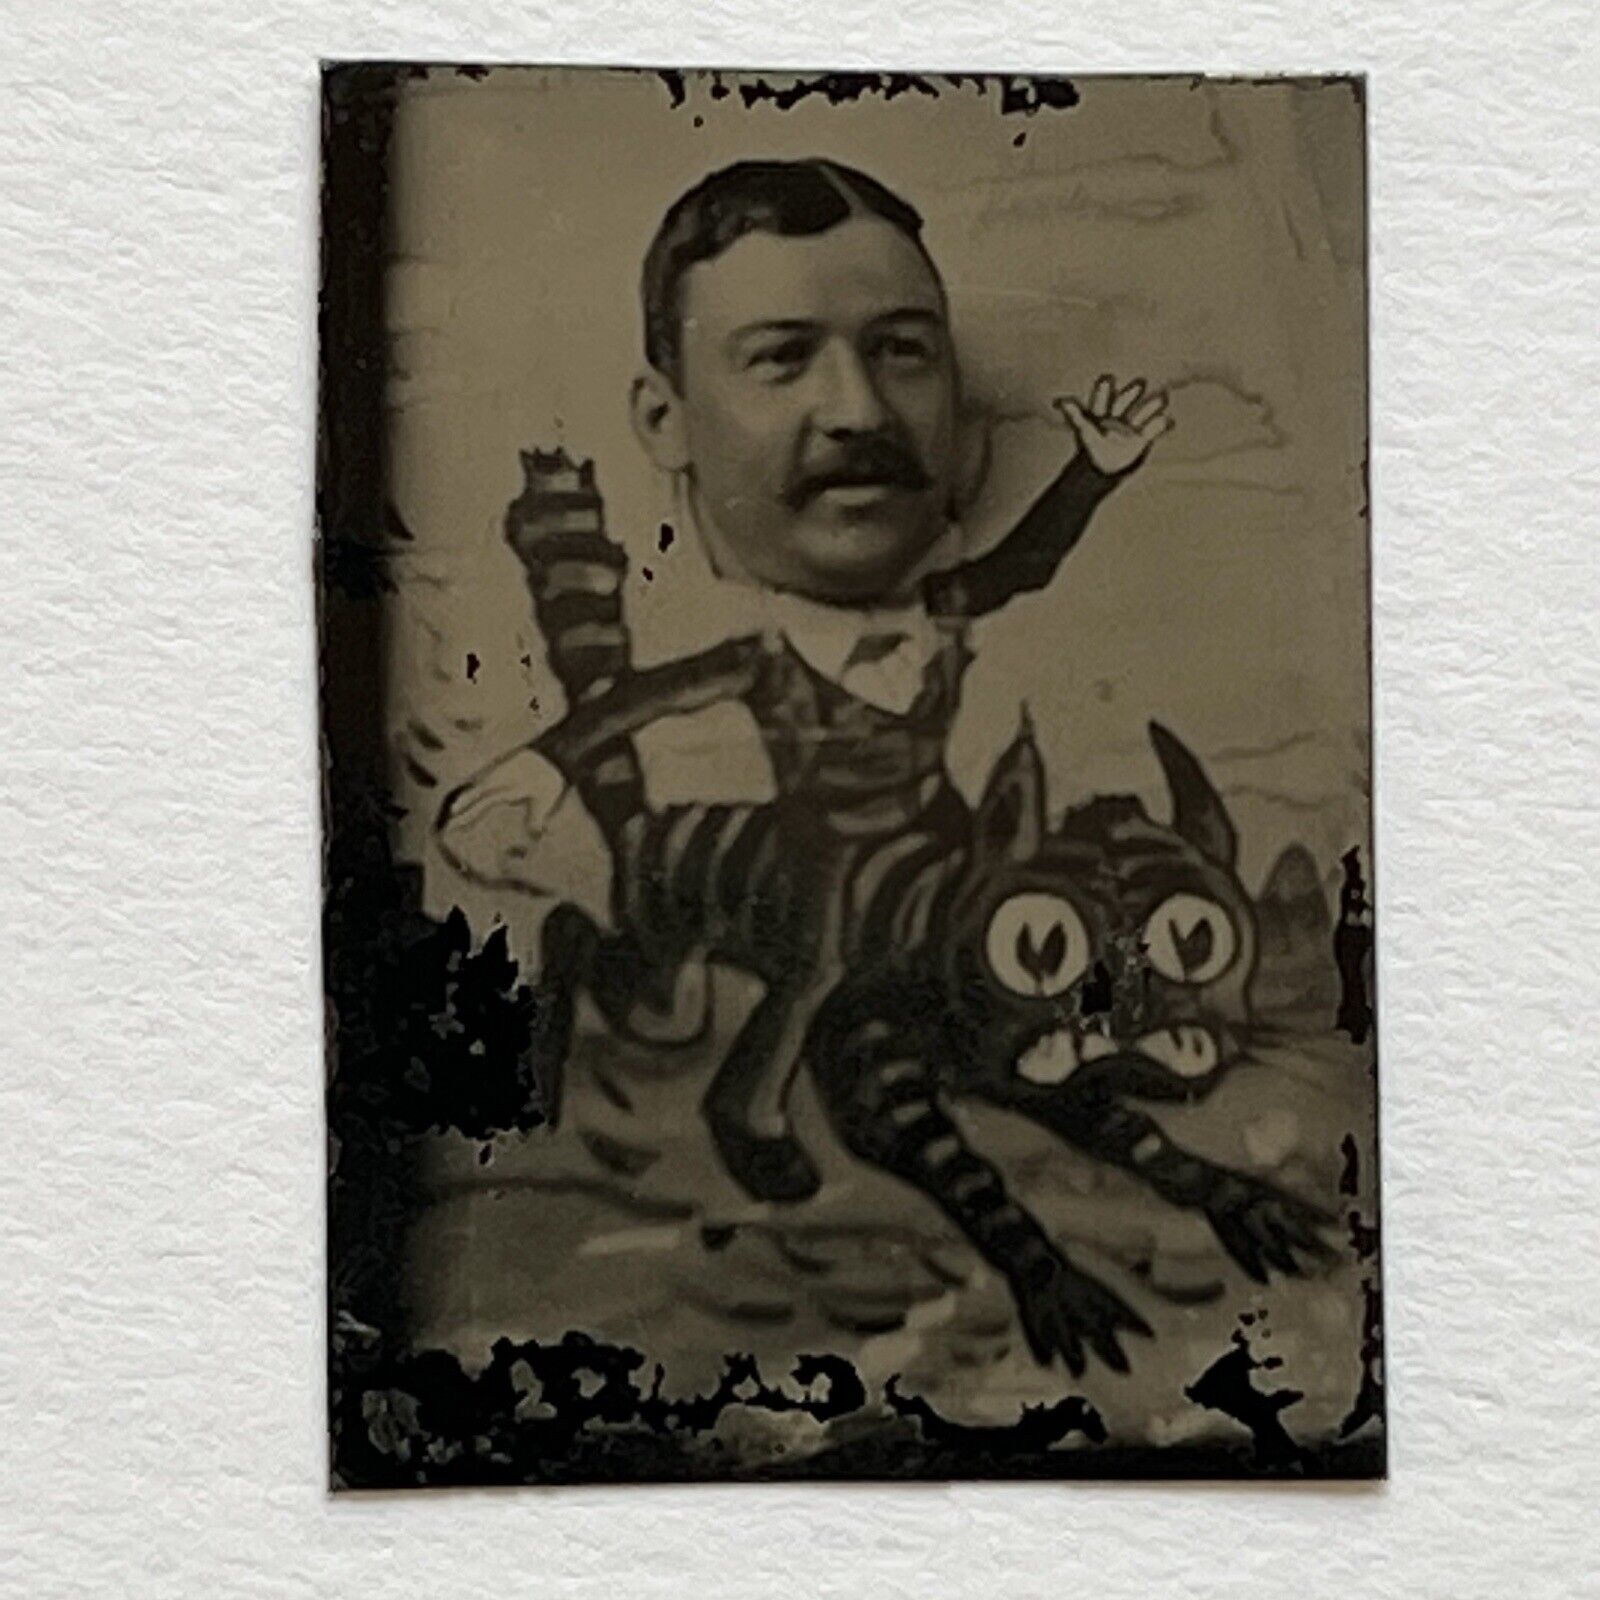 Antique Miniature Tintype Arcade Photograph Man Riding Tabby Cat Tiger Fun Odd